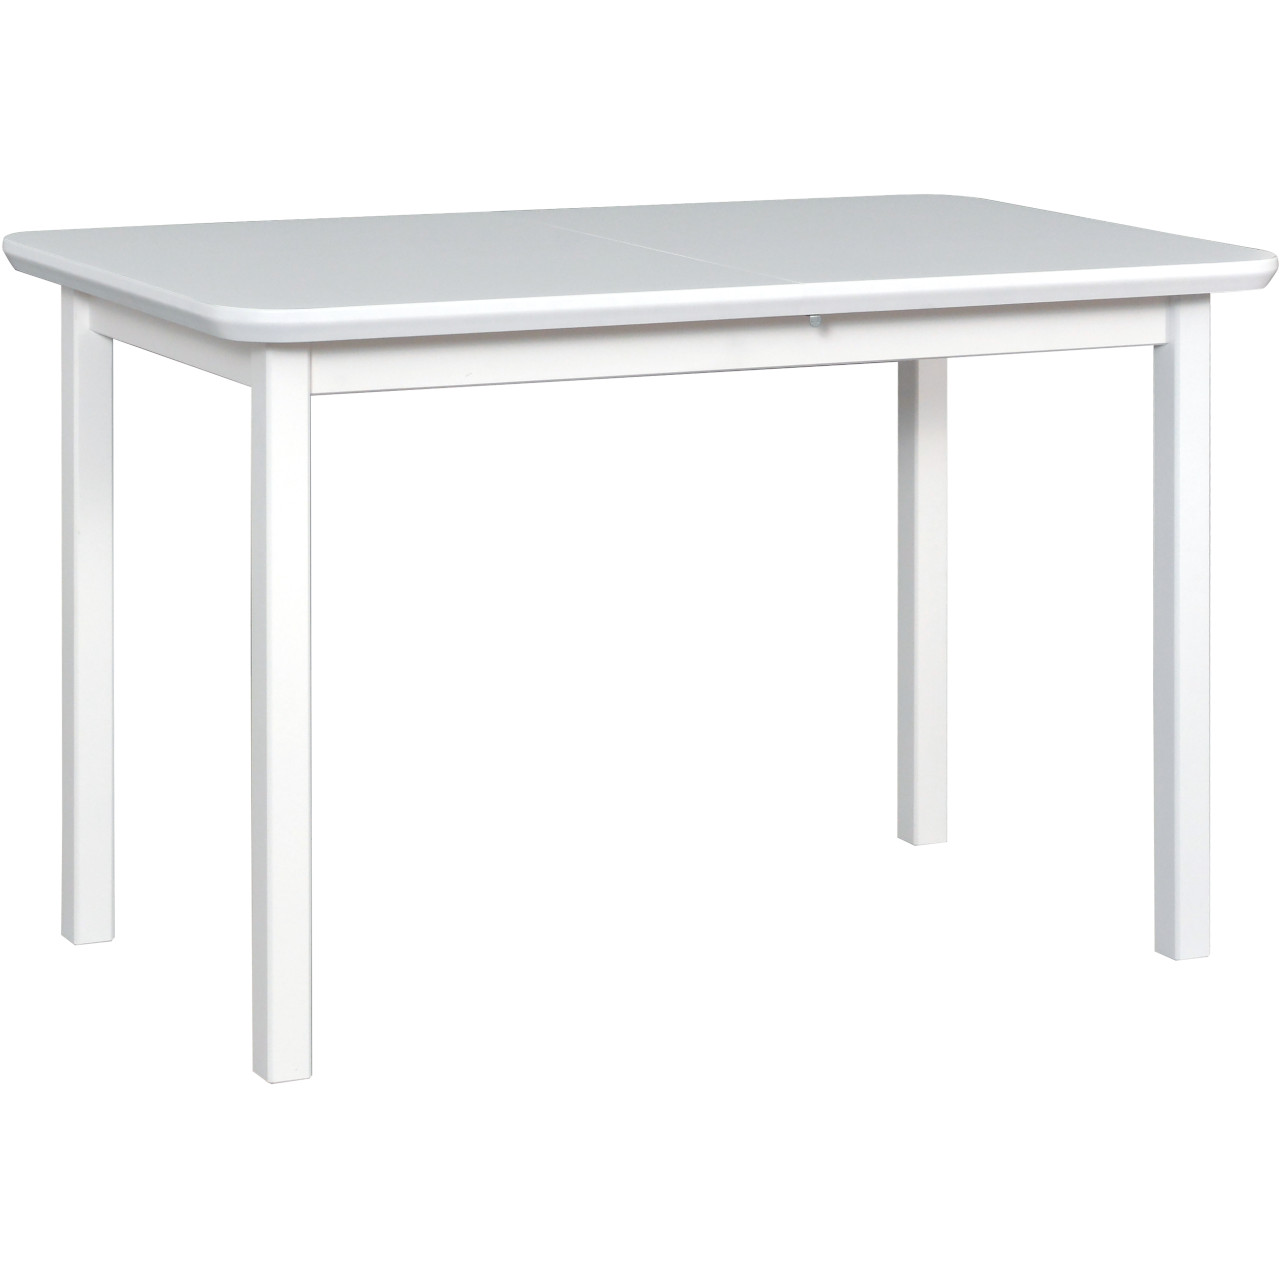 Tisch MAX 4 70x120/150 weiß MDF